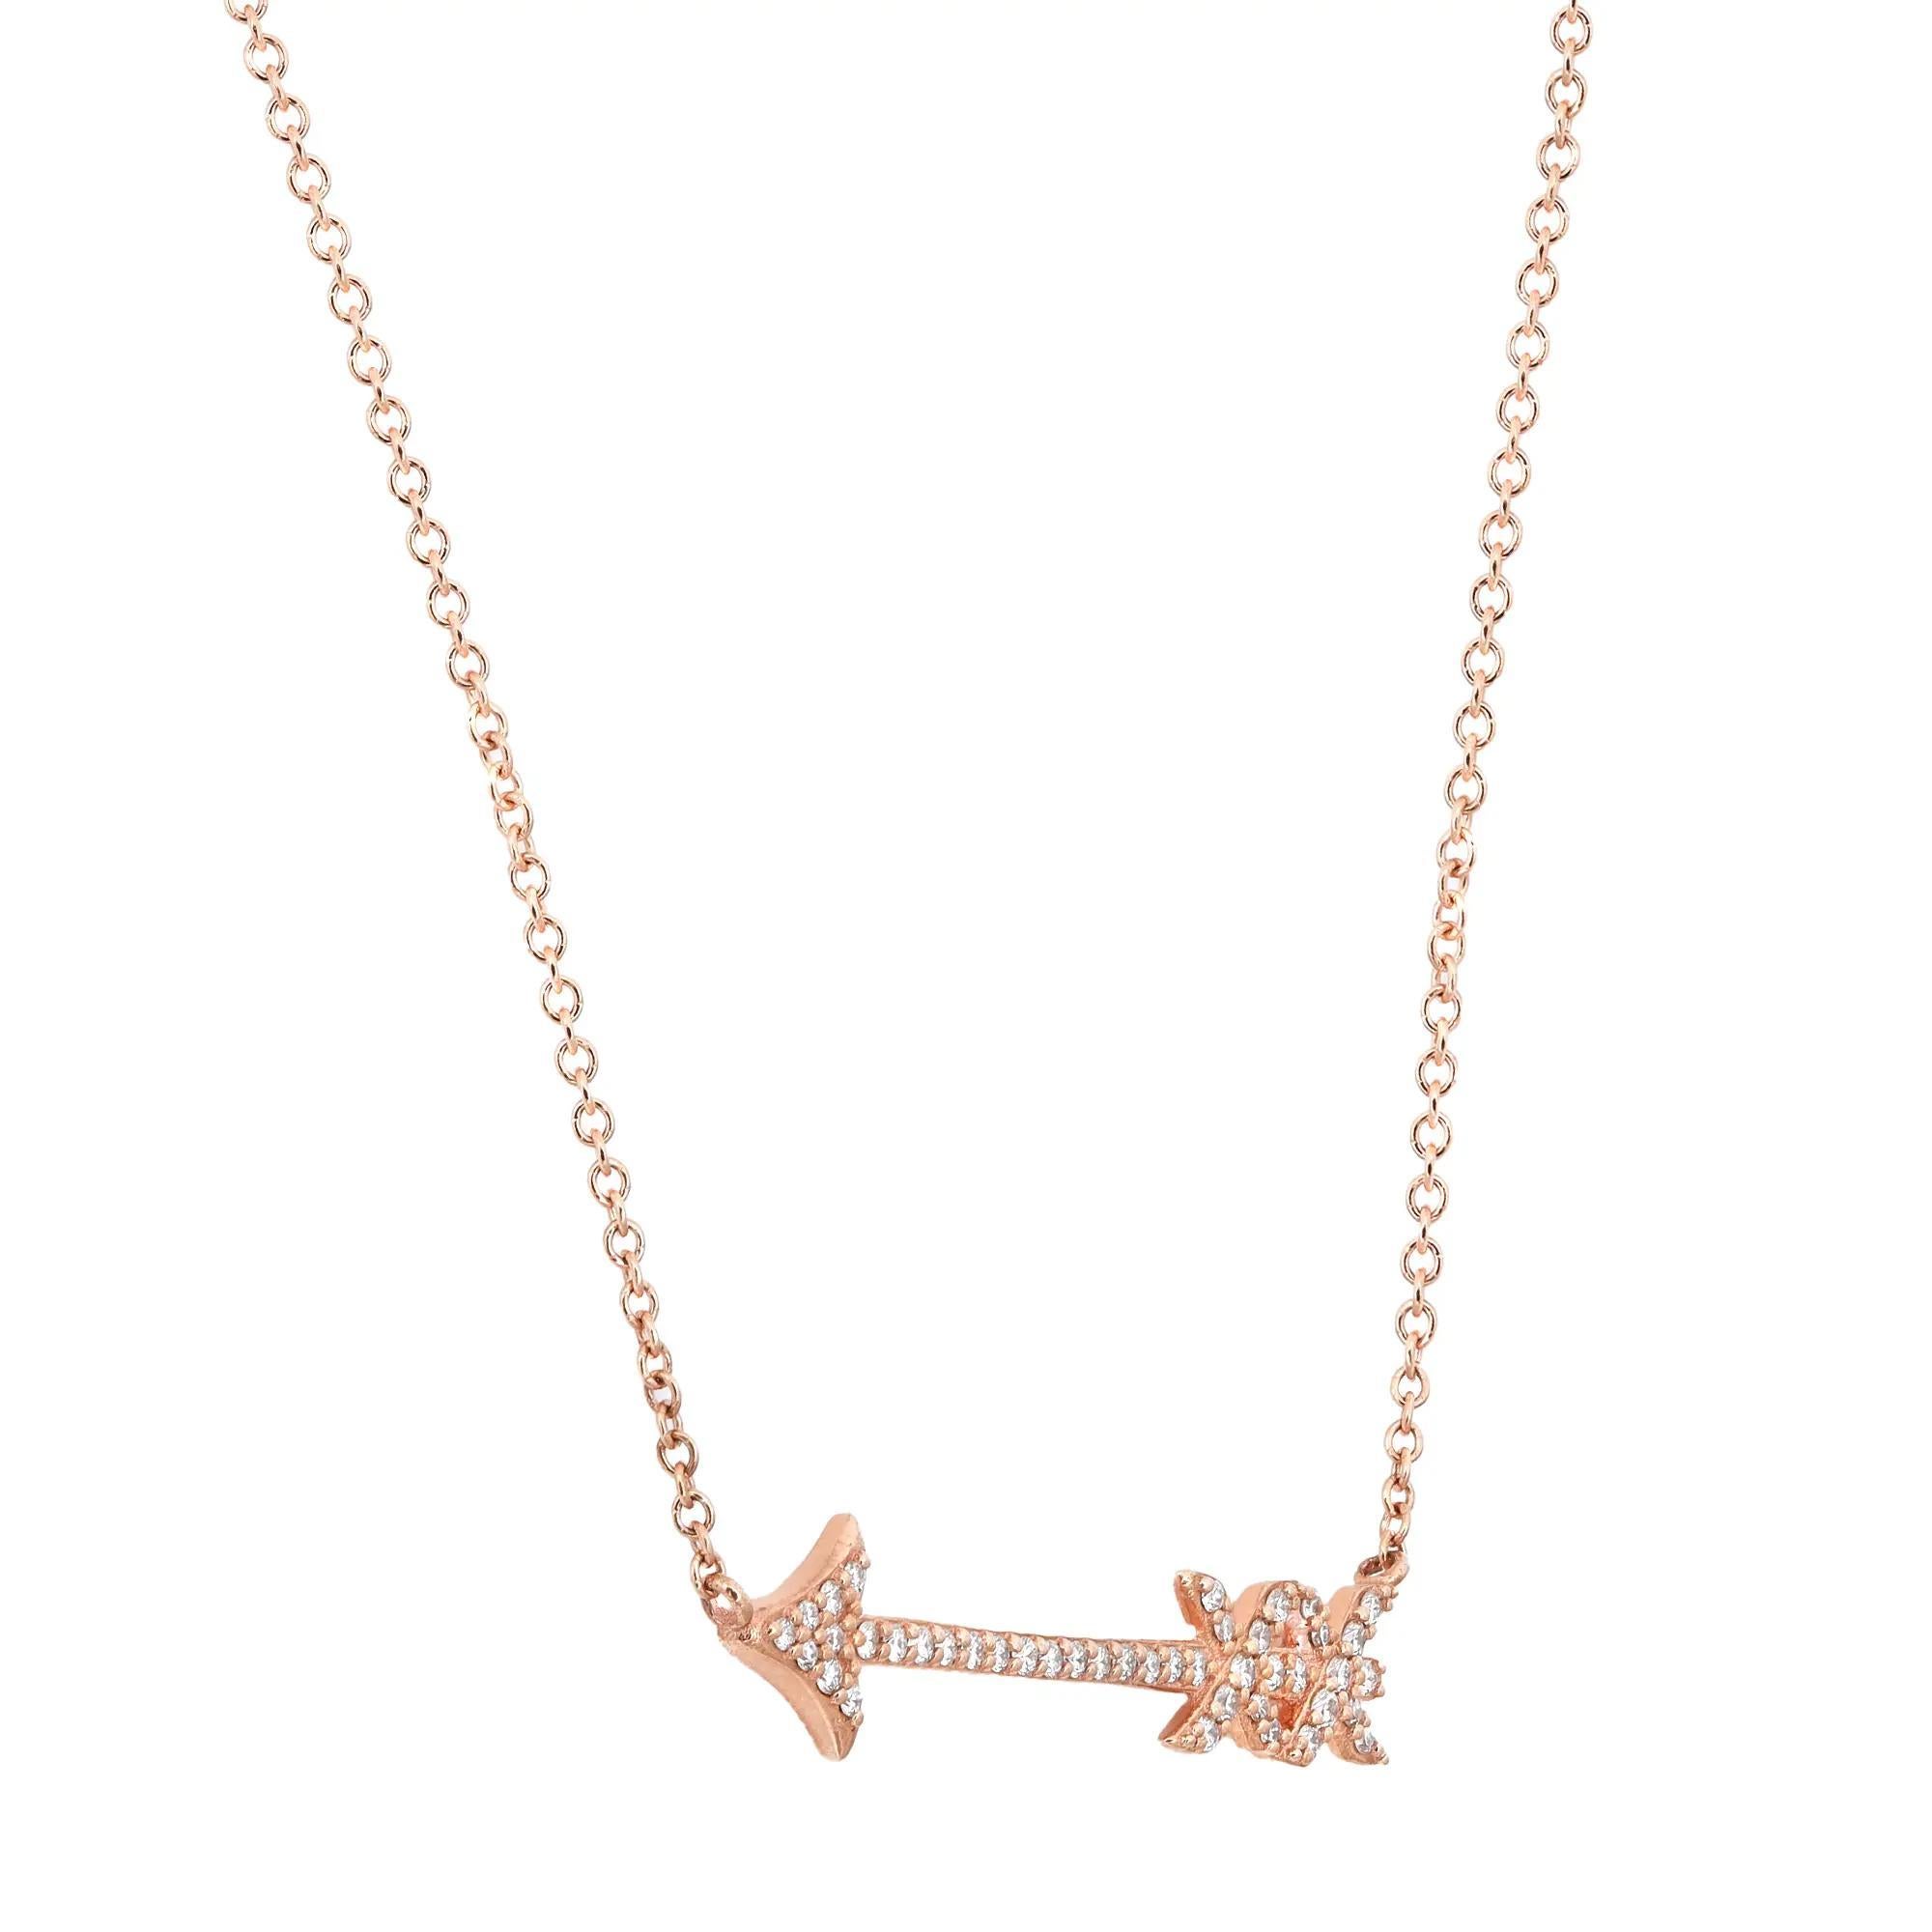 Cette magnifique pièce de Tiffany & Co. Le collier à pendentifs Graffiti Arrow de Paloma est une belle pièce pour accentuer votre look général. Réalisé en or rose 18 carats, ce collier présente un pendentif en forme de flèche serti de diamants ronds